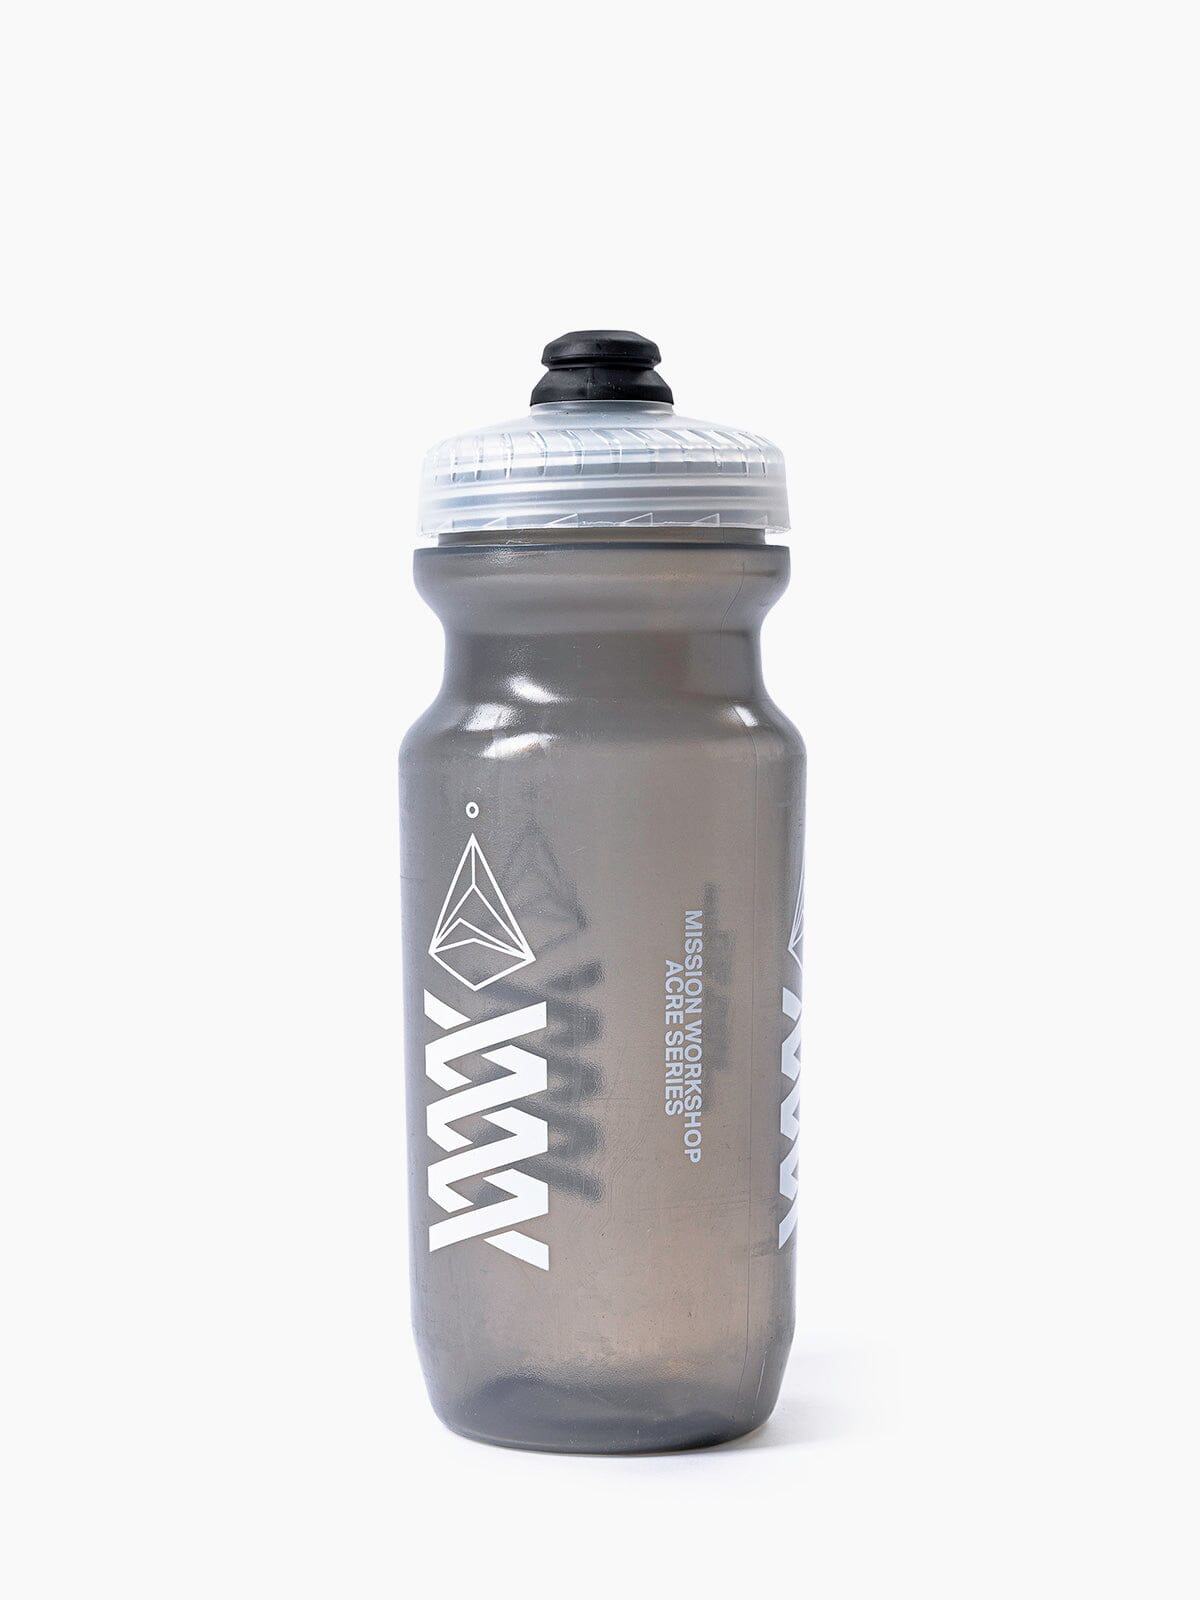 Acre Series Water Bottle von Mission Workshop - Wetterfeste Taschen und technische Bekleidung - San Francisco & Los Angeles - Für die Ewigkeit gebaut - Garantiert